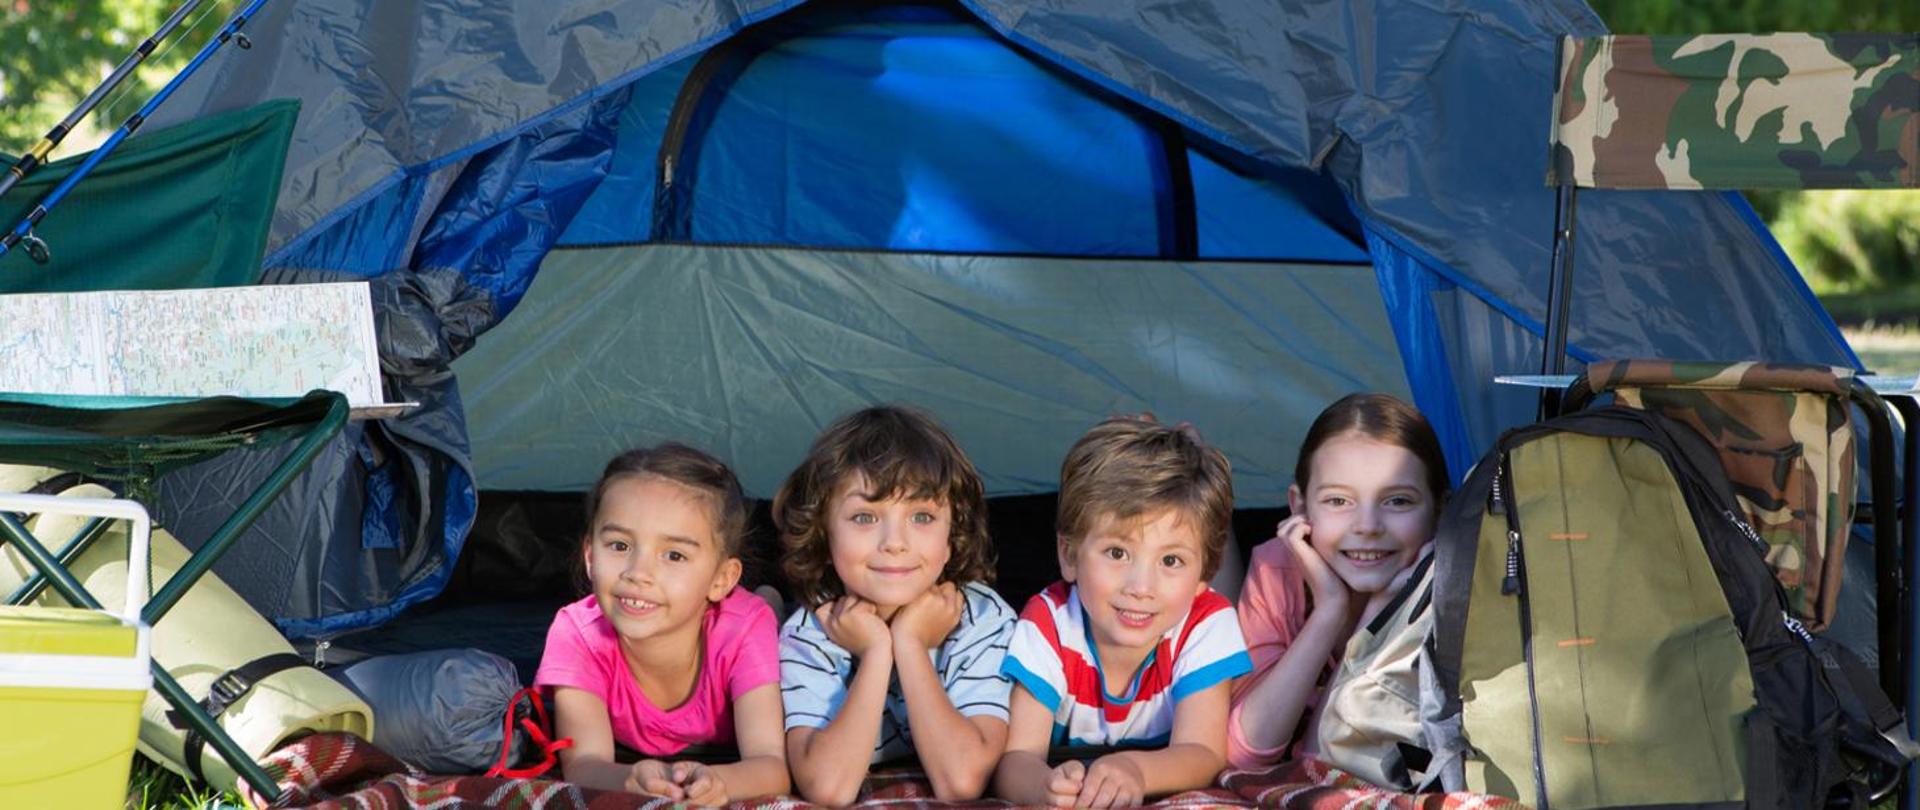 Zdjęcie czwórki uśmiechniętych dzieci leżących w namiocie, namiot koloru niebieskiego